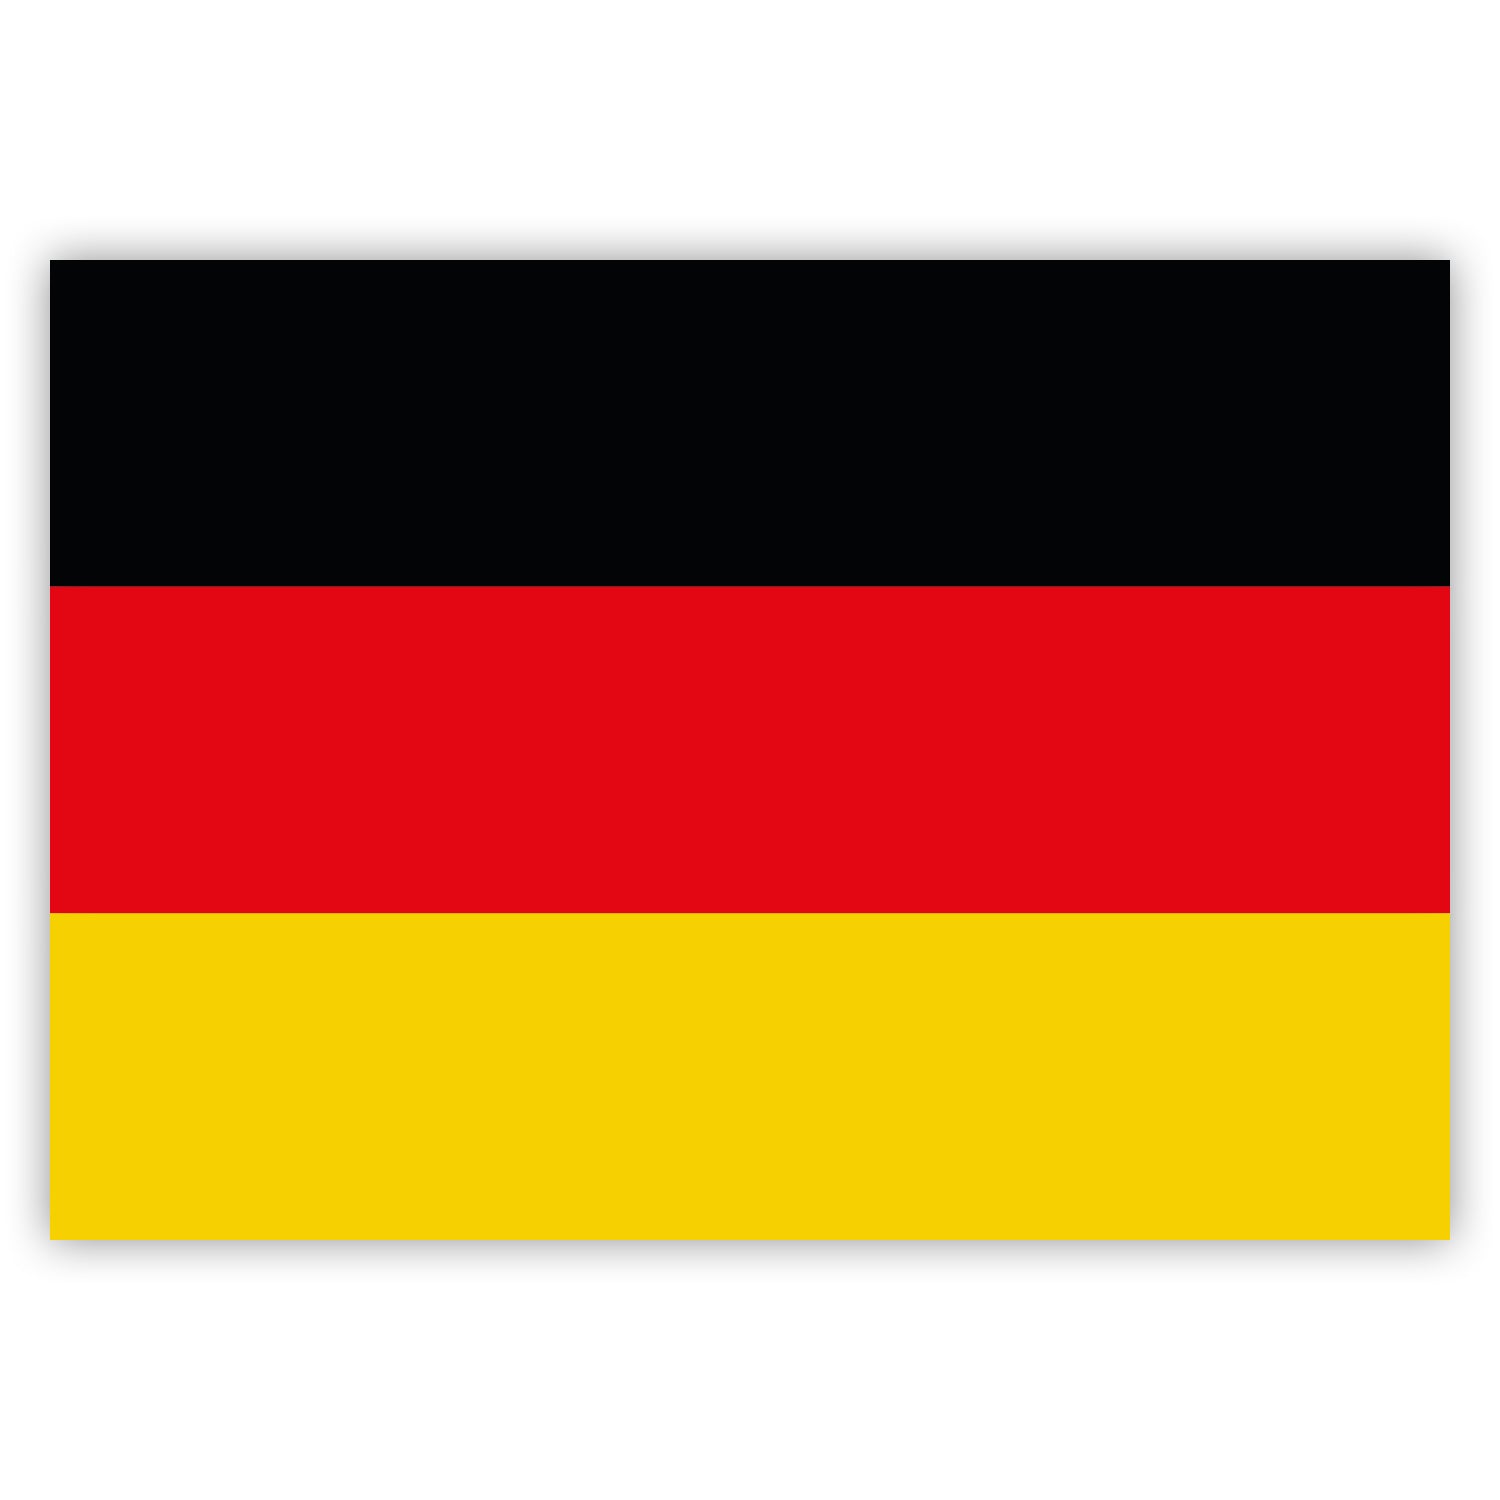 http://www.gobrecht-ulrich.com/cdn/shop/products/gobrecht-ulrich-german-flag-stickers.jpg?v=1597937624